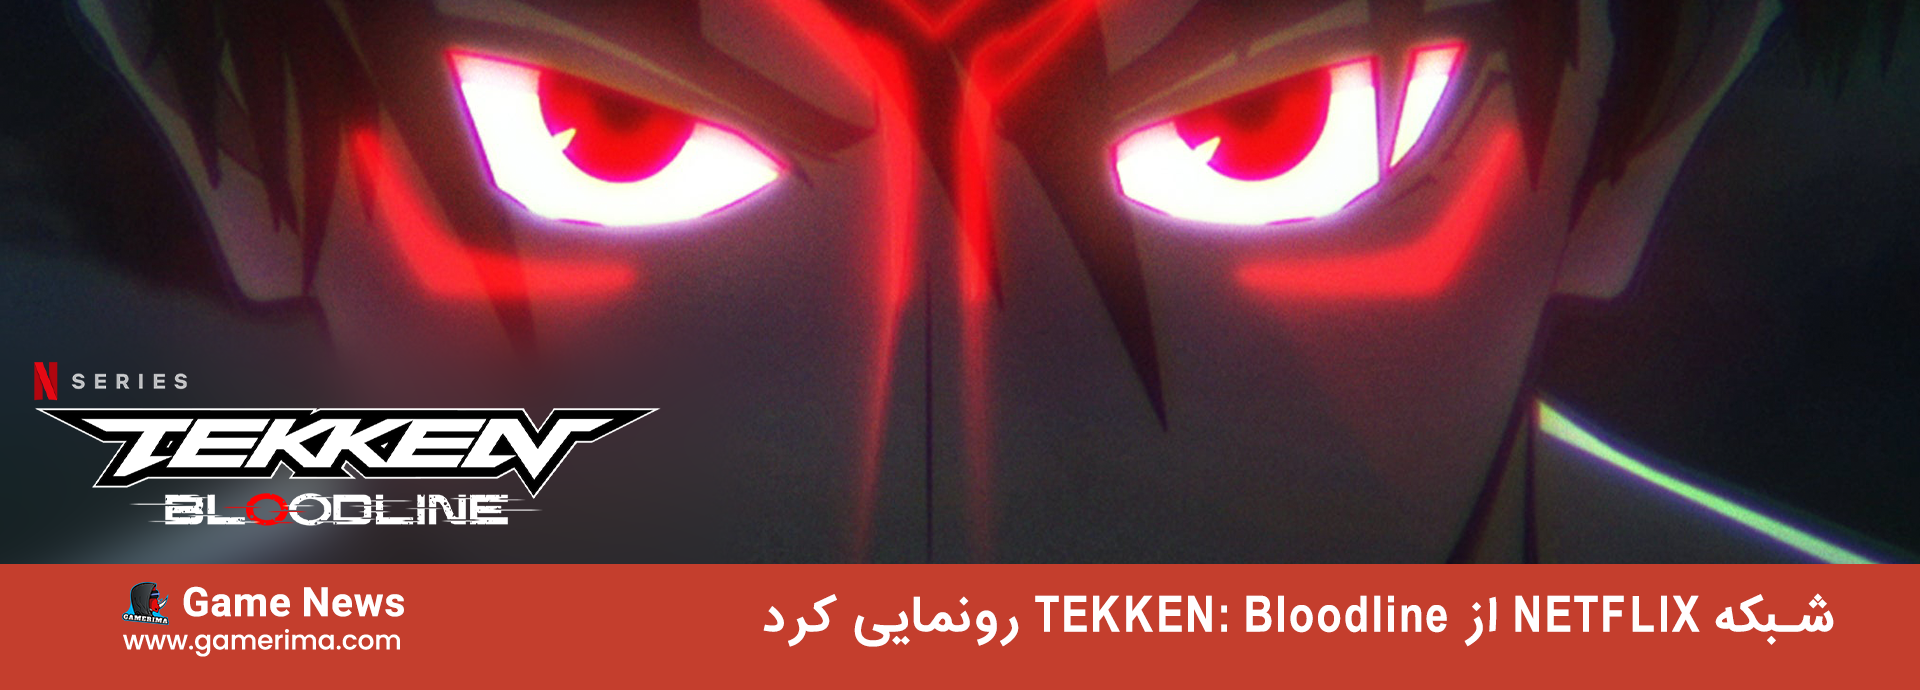 شبکه Netflix از انیمه Tekken: bloodline برای ۲۰۲۲ رونمایی کرد